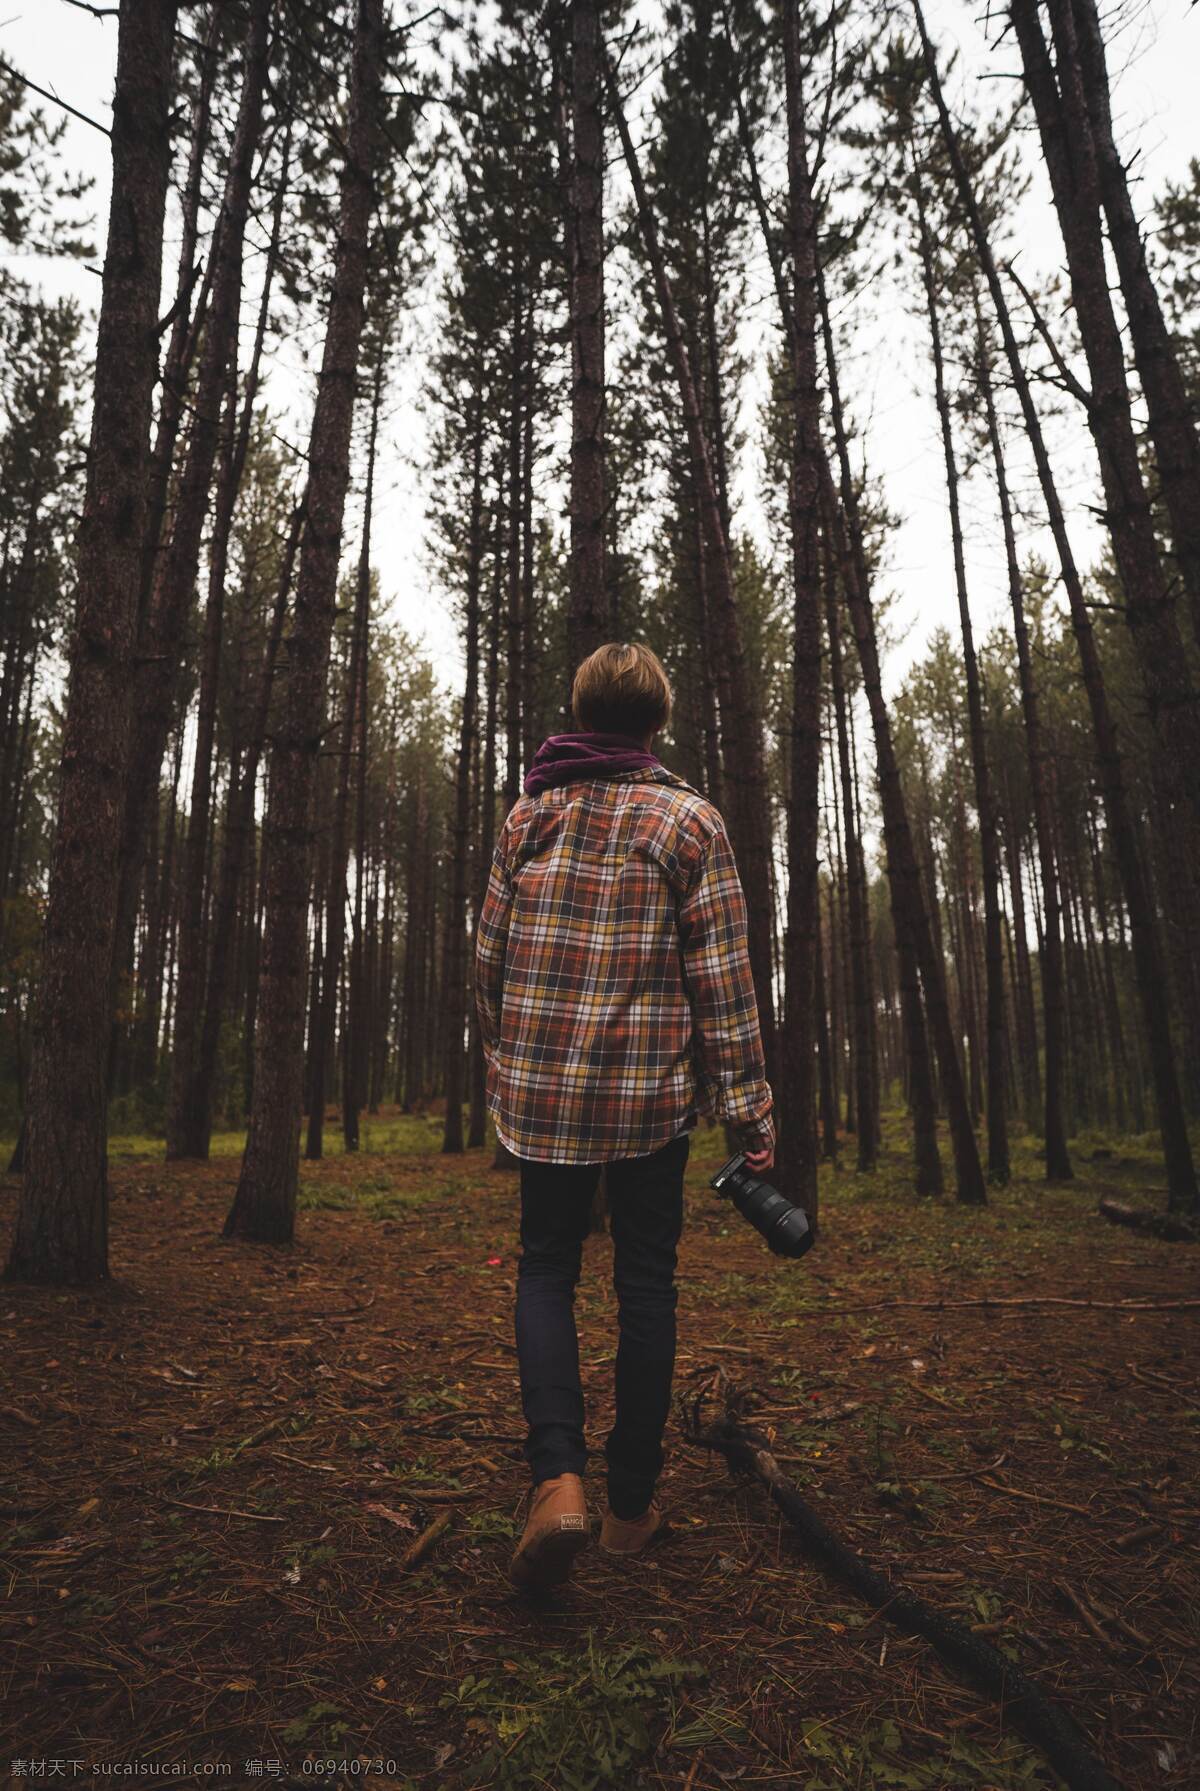 树林 拍摄 男孩 森林 数木 树 人 男性 背影 相机 户外 摄影爱好者 探险 冒险 旅行 景色 观看 游玩 人物 人物图库 男性男人